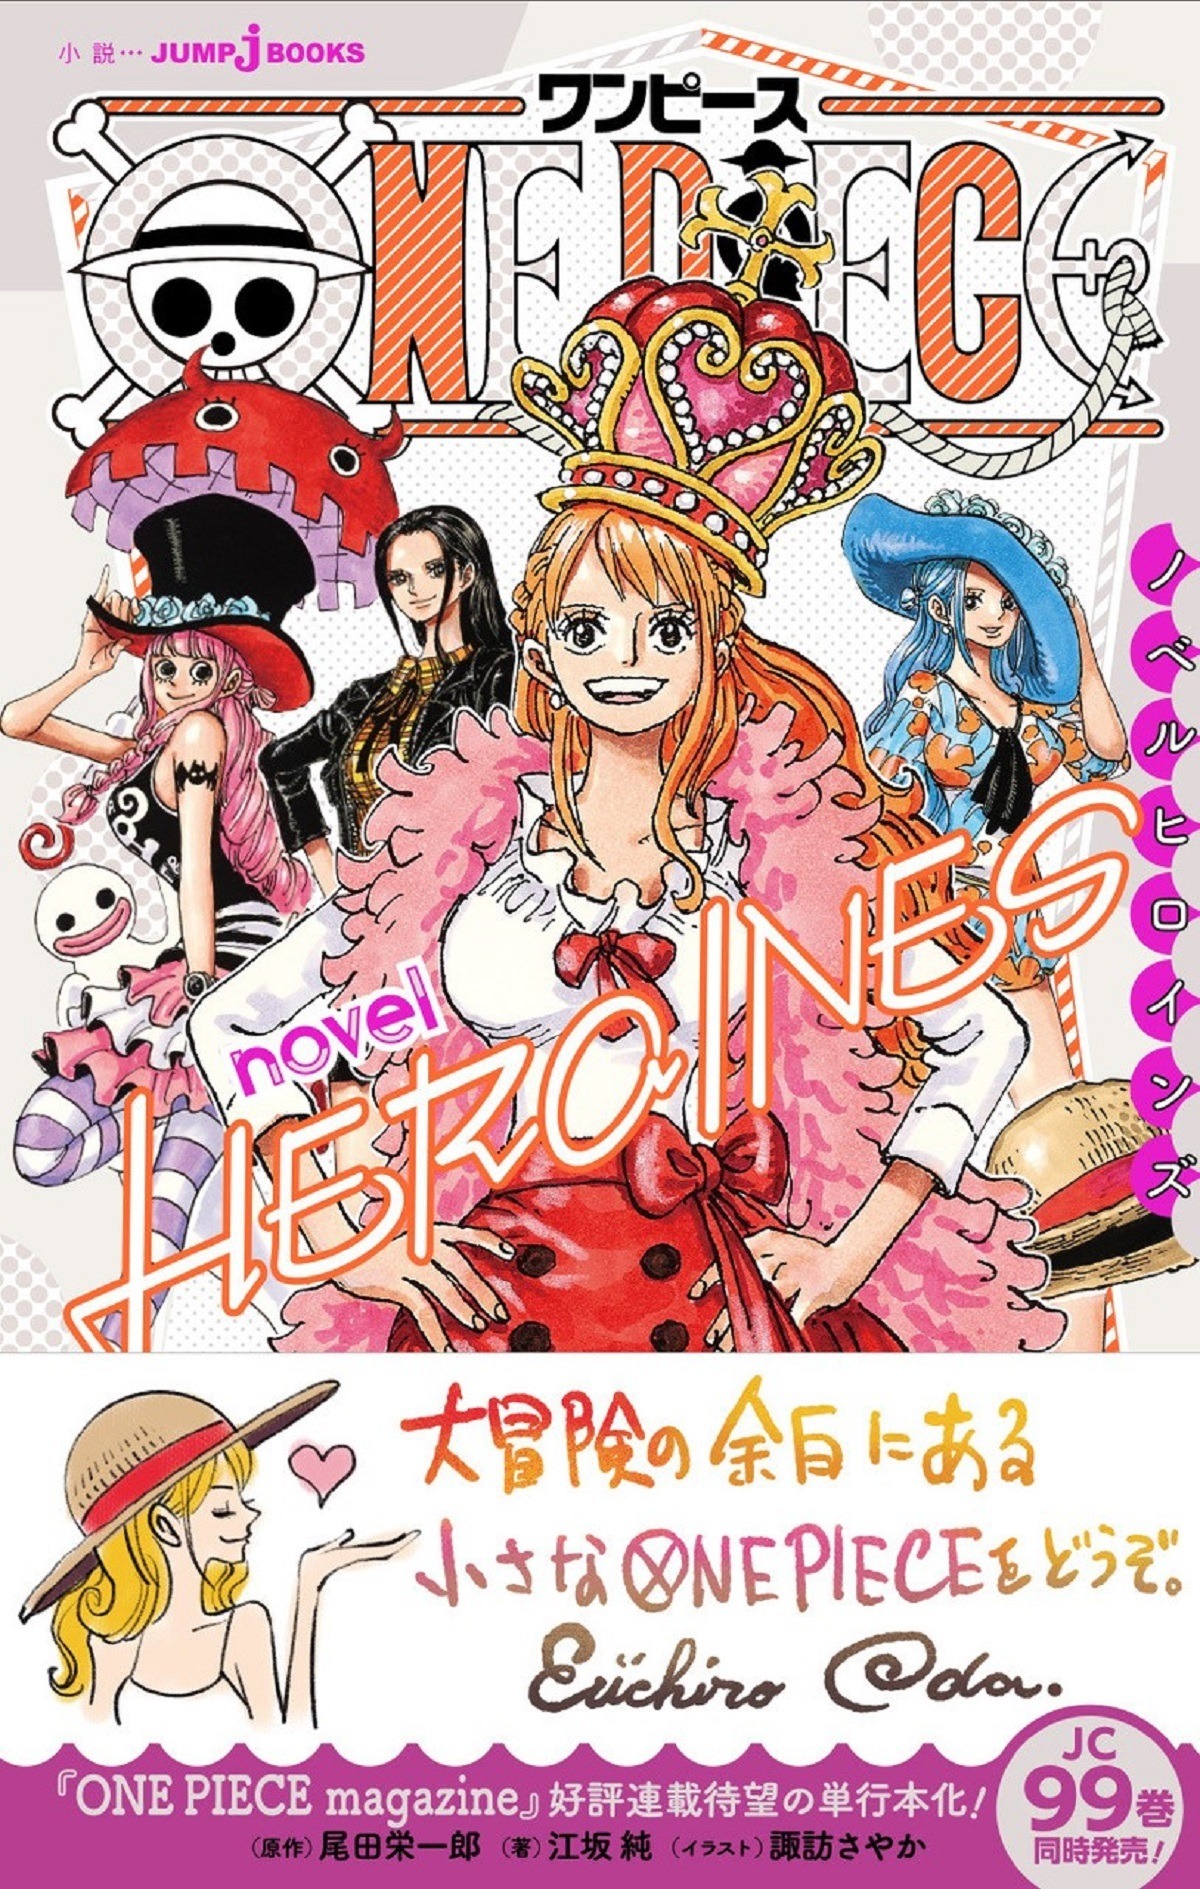 ワンピース ナミ ロビンたちヒロインの 自分らしさ を描く短編集 One Piece Novel Heroines 発売 アニメ アニメ